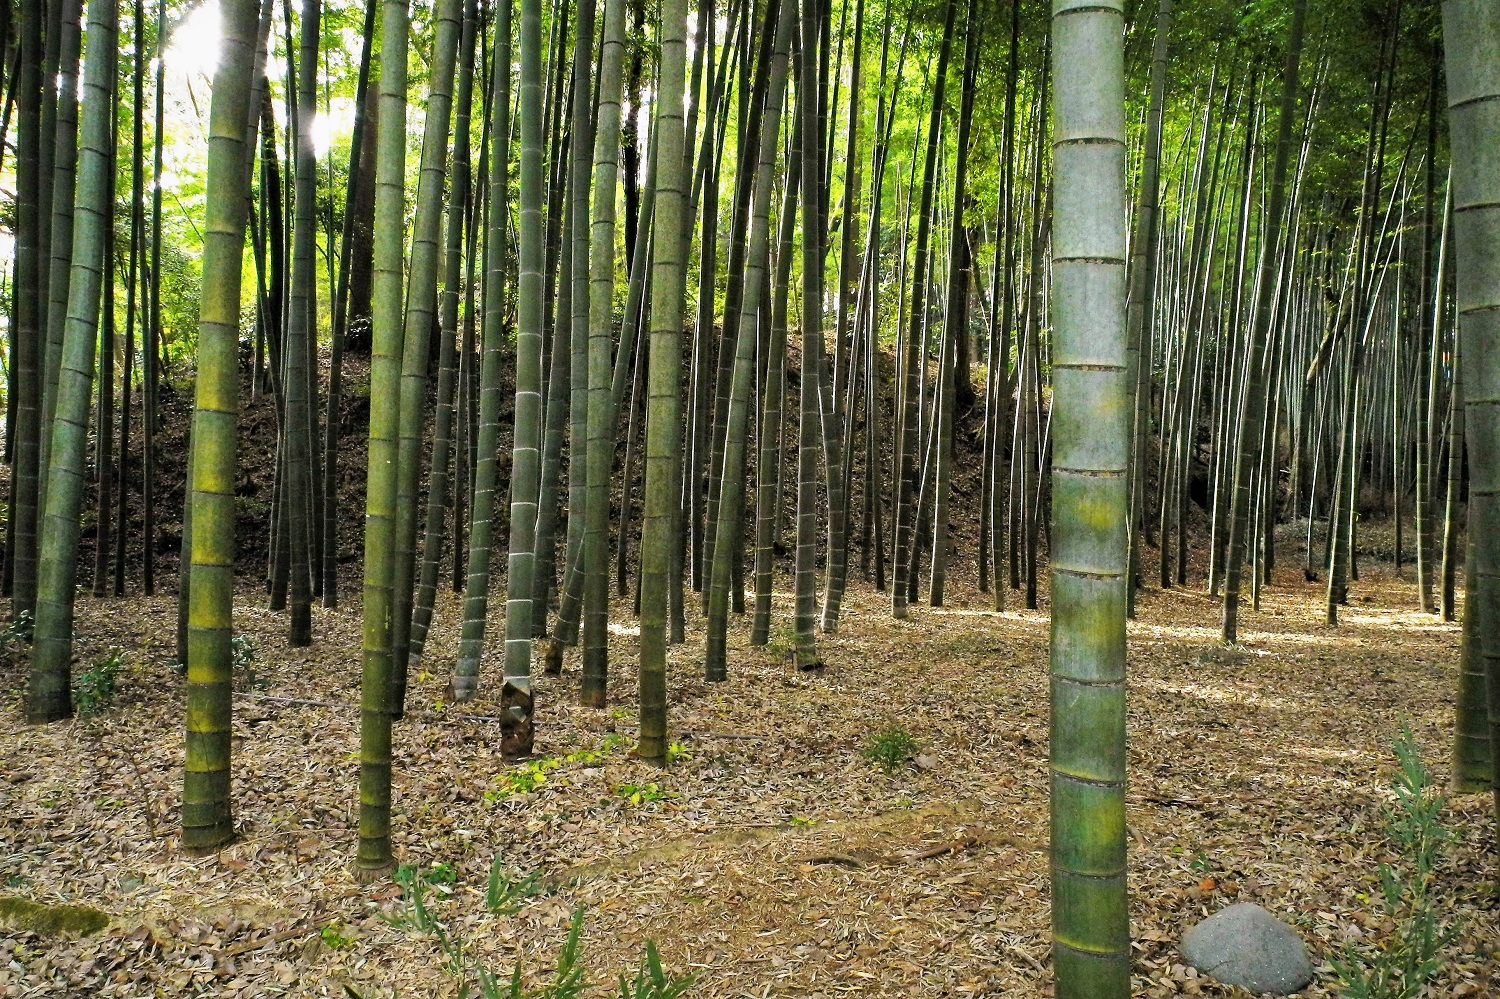 Bambo thicketin Satoyama Koen 